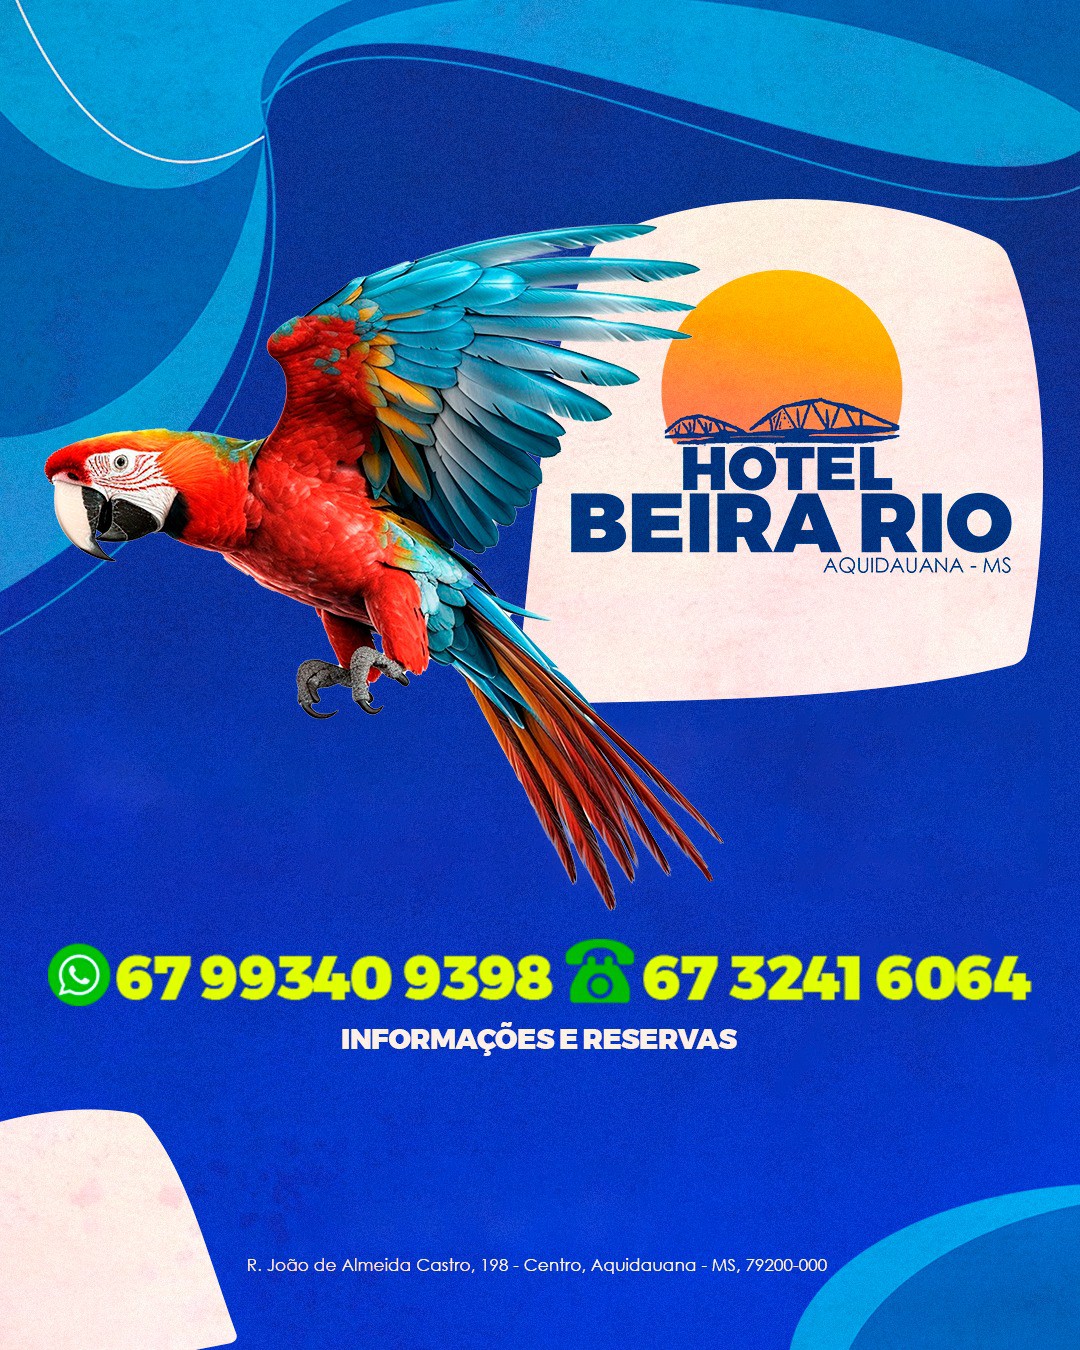 Hotel Beira Rio Aquidauana